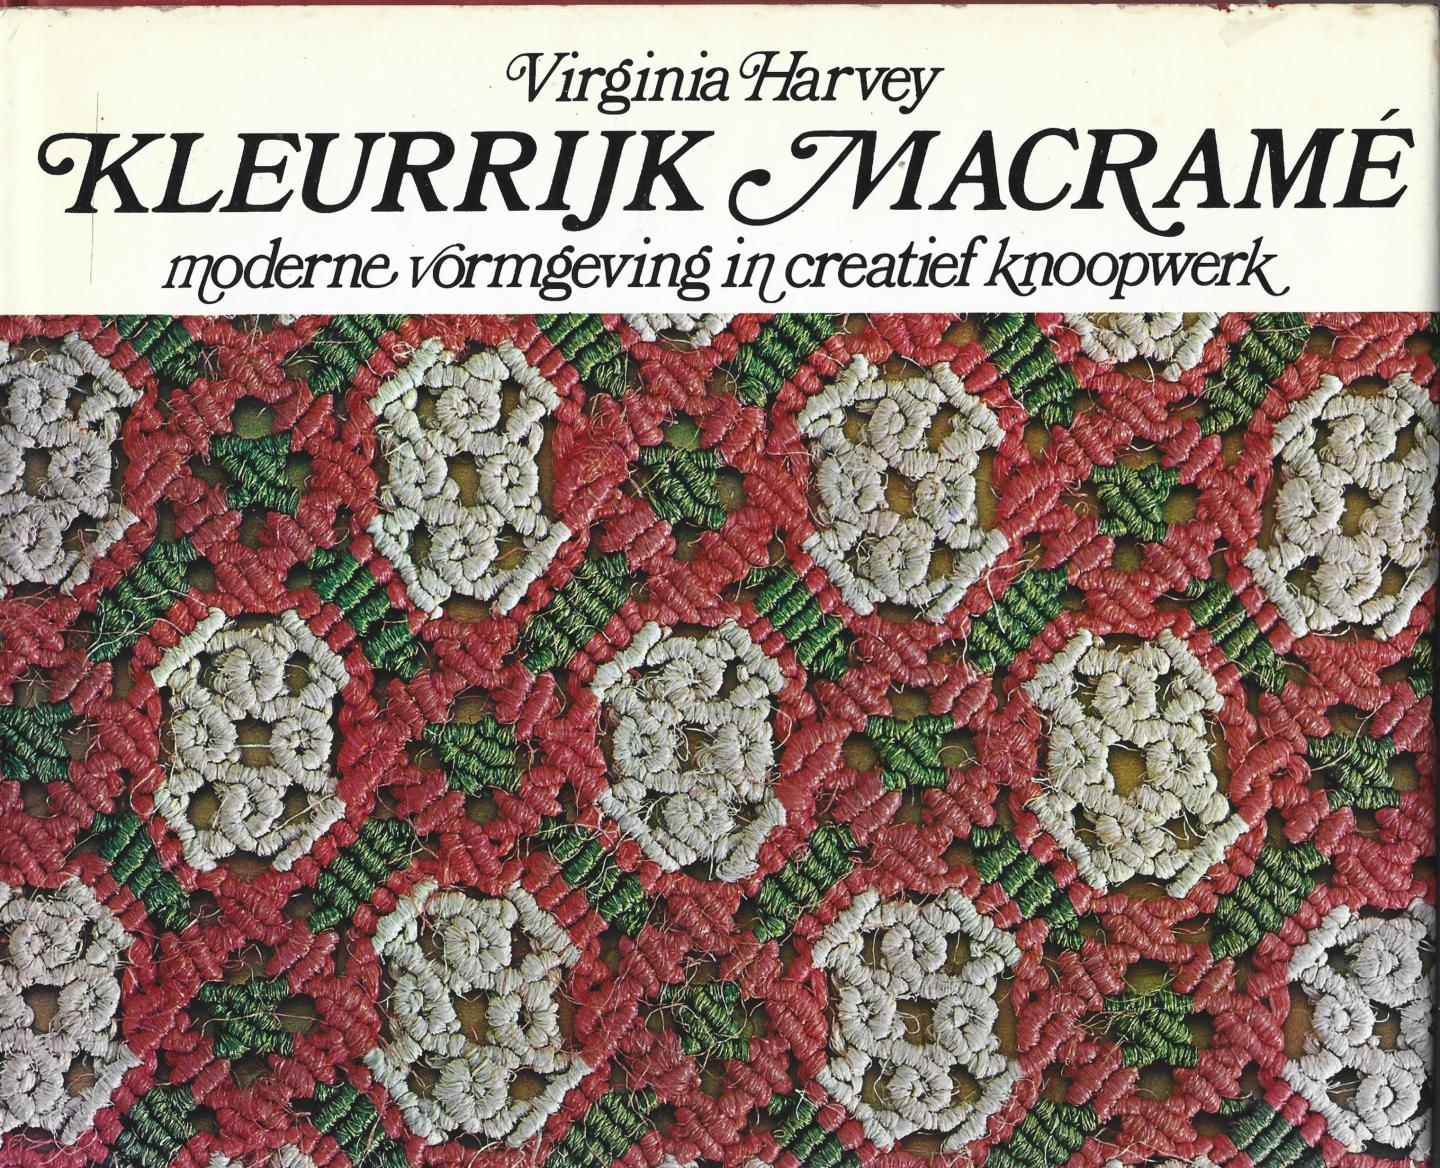 Harvey, Virginia; Petra Smittenaar (vertaling) - Kleurrijk macramé. Moderne vormgeving in creatief knoopwerk